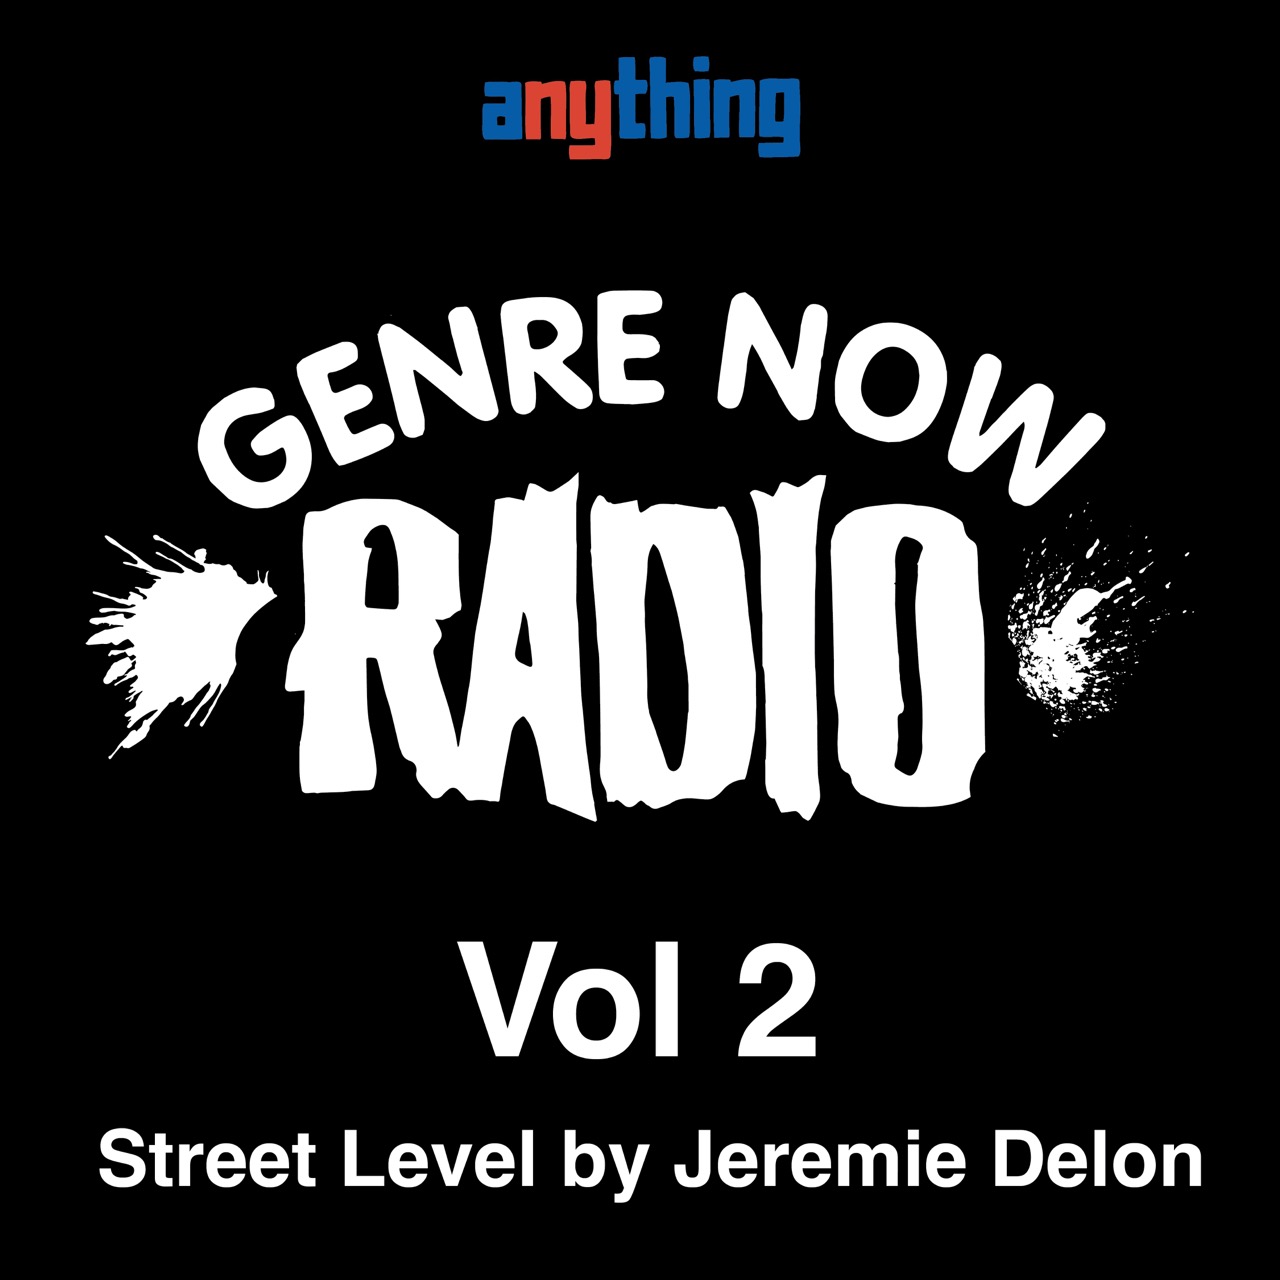 GENRE NOW: Vol 2 Street Level by Jeremie Delon aka jay Byrd